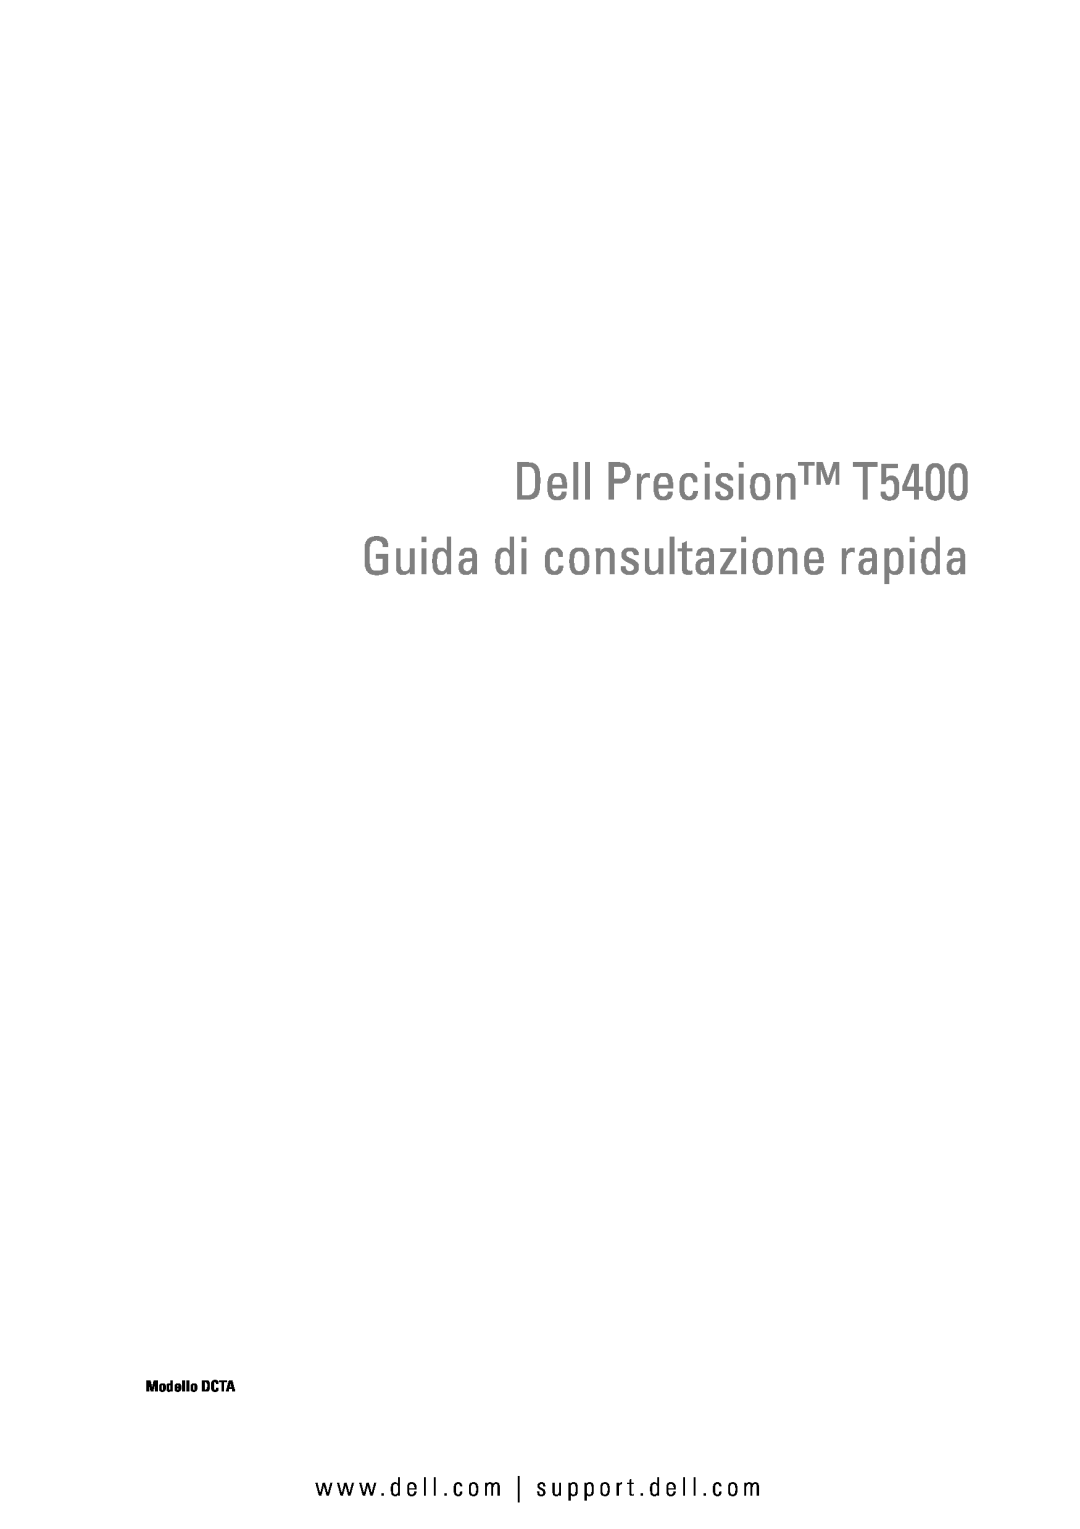 Dell manual Dell Precision T5400 Guida di consultazione rapida, w w w . d e l l . c o m s u p p o r t . d e l l . c o m 